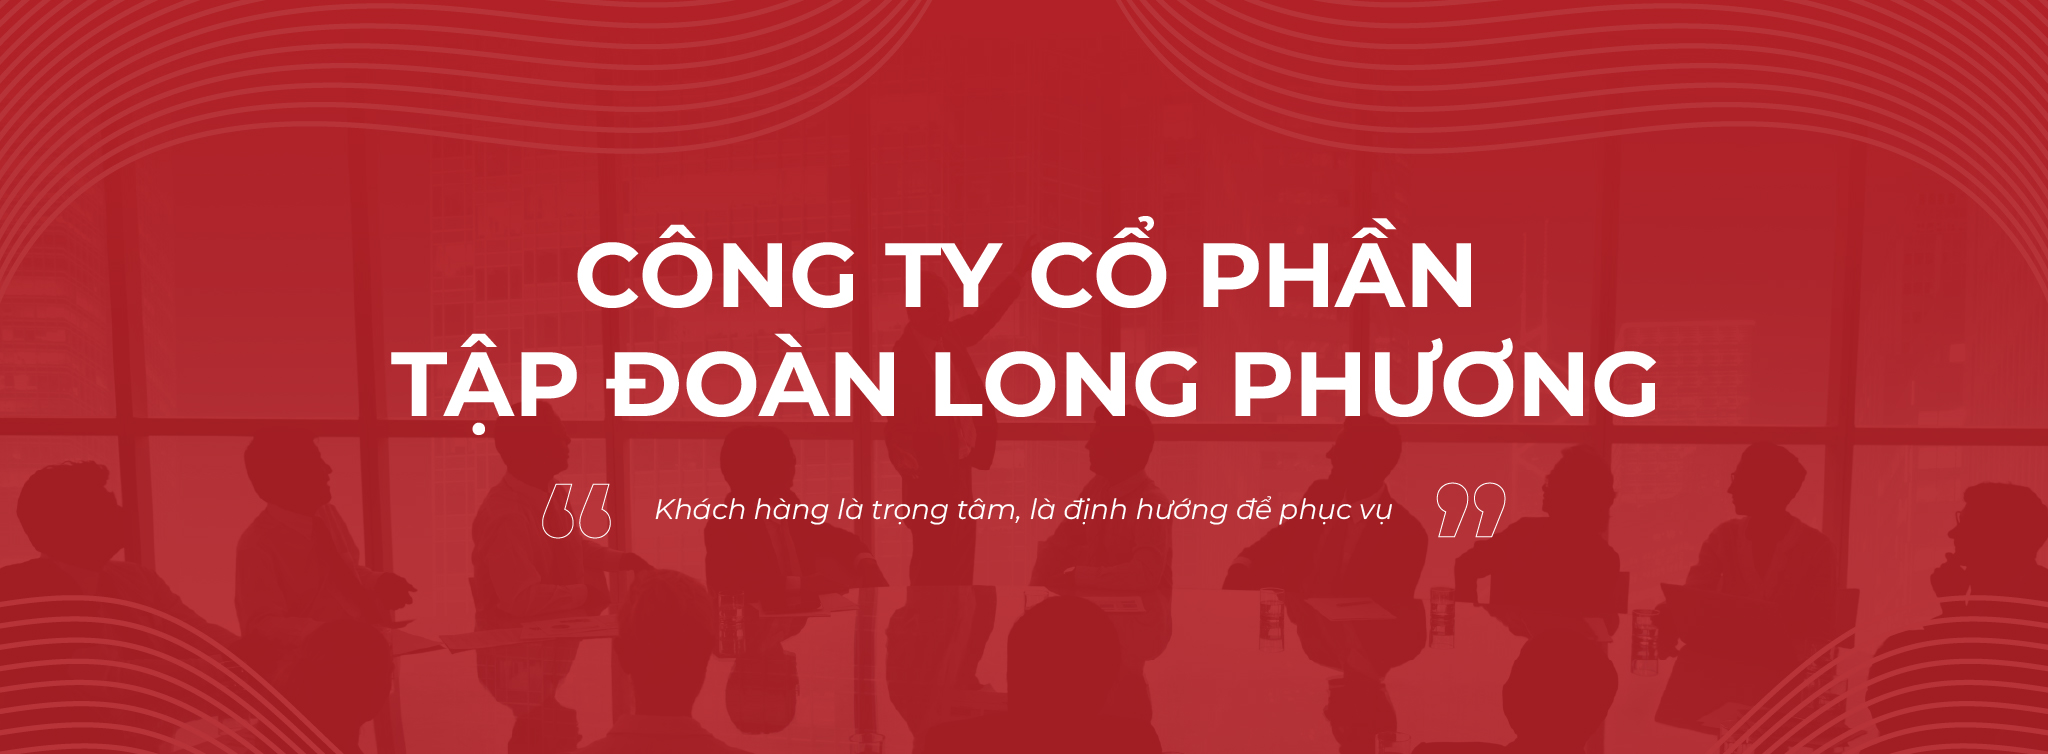 Banner công ty cổ phần tập đoàn Long Phương